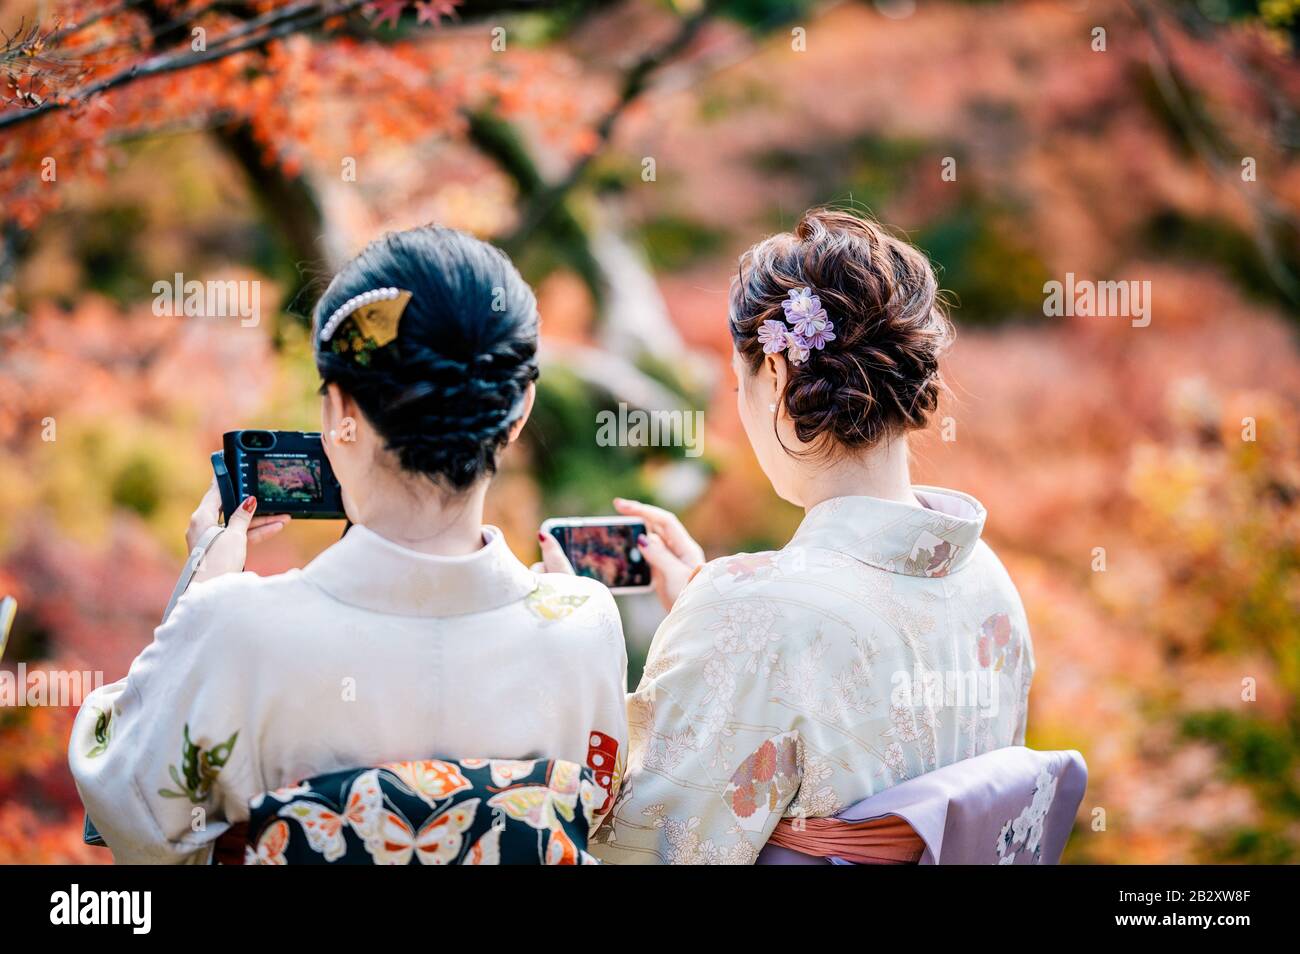 Las mujeres jóvenes que visten el tradicional kimono japonés con coloridos árboles de arce en otoño son famosas en hojas de color otoñal y flores de cerezo en primavera, Ky Foto de stock